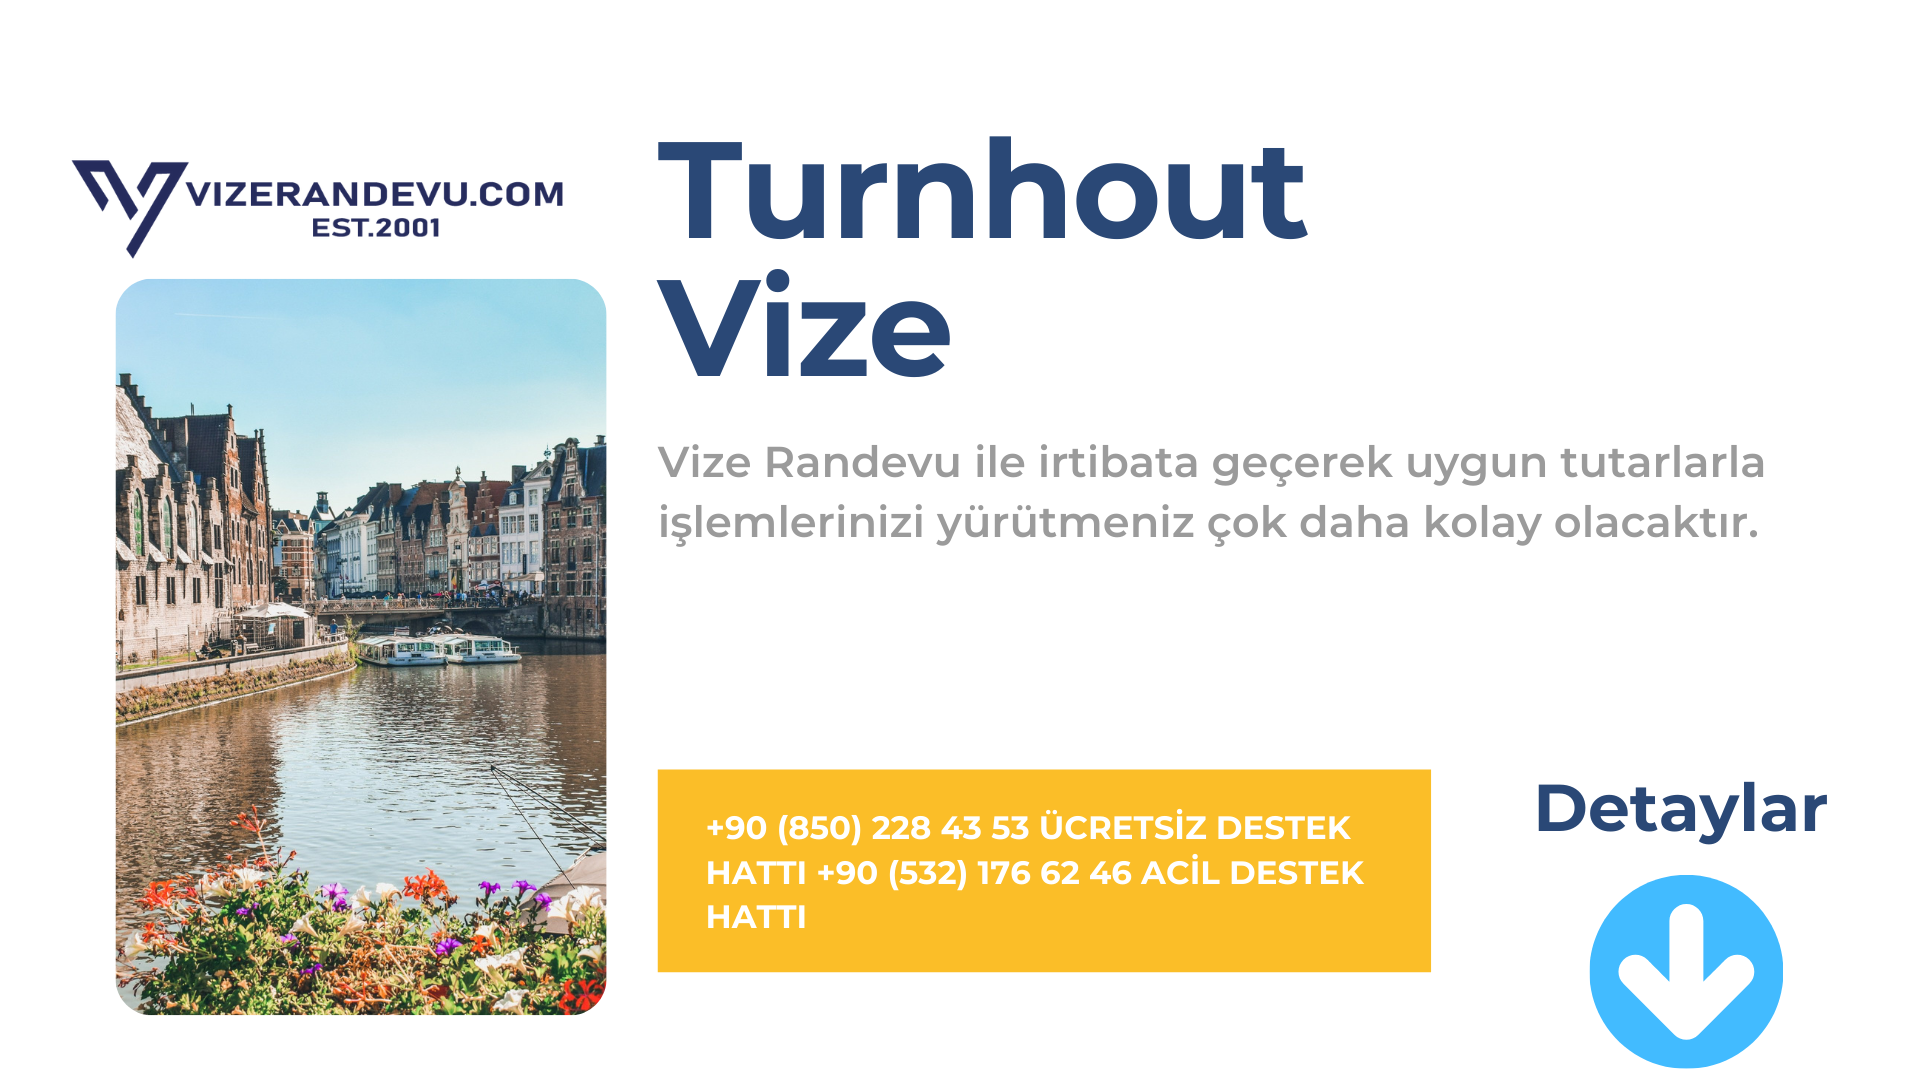 Turnhout Vize